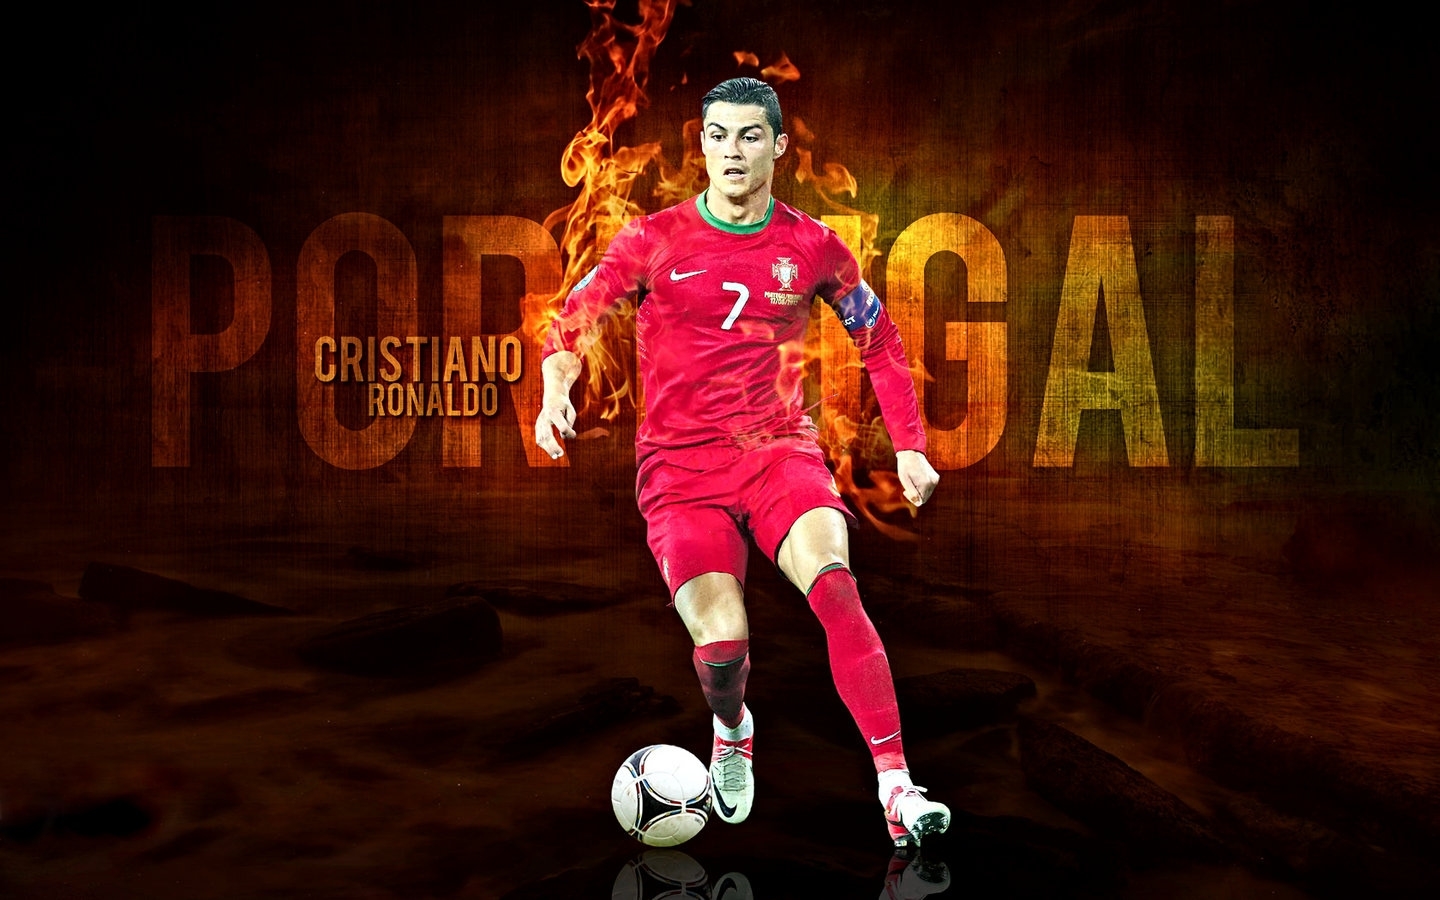 Cristiano-Ronaldo-Portugal-2012-cristiano-ronaldo-31550363-1440-900